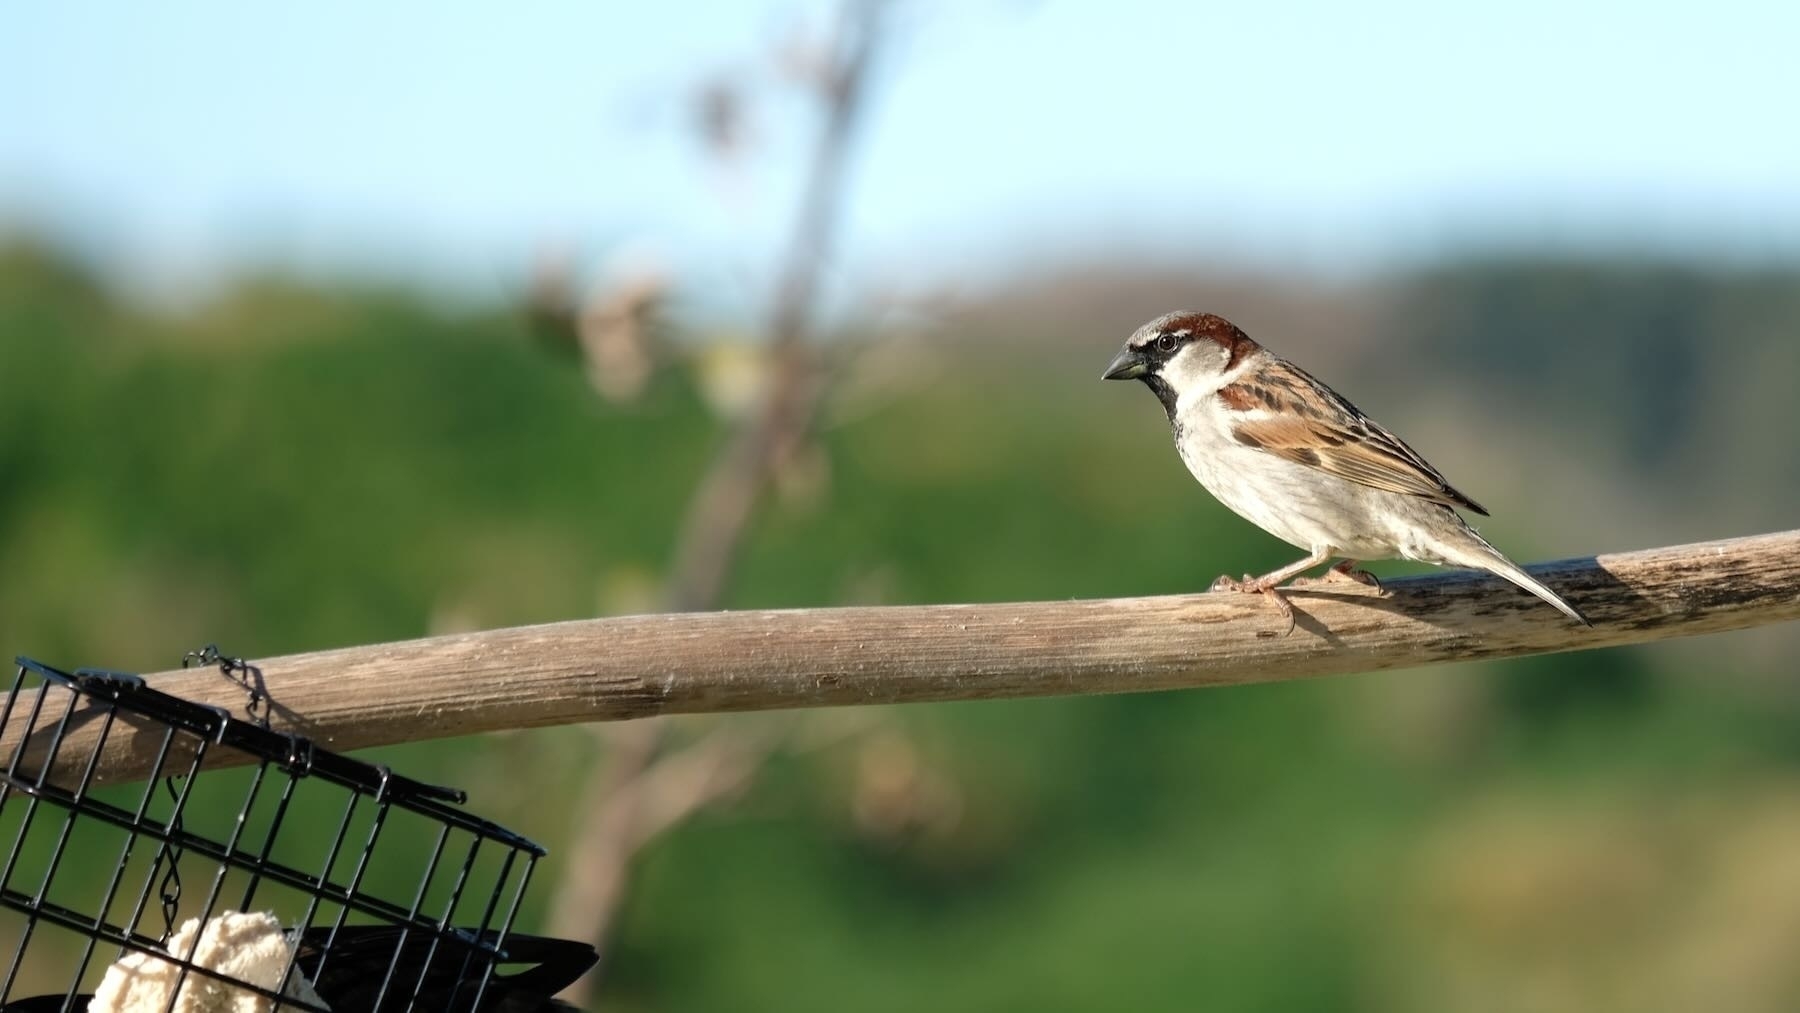 Sparrow on a horizontal flax spear. 